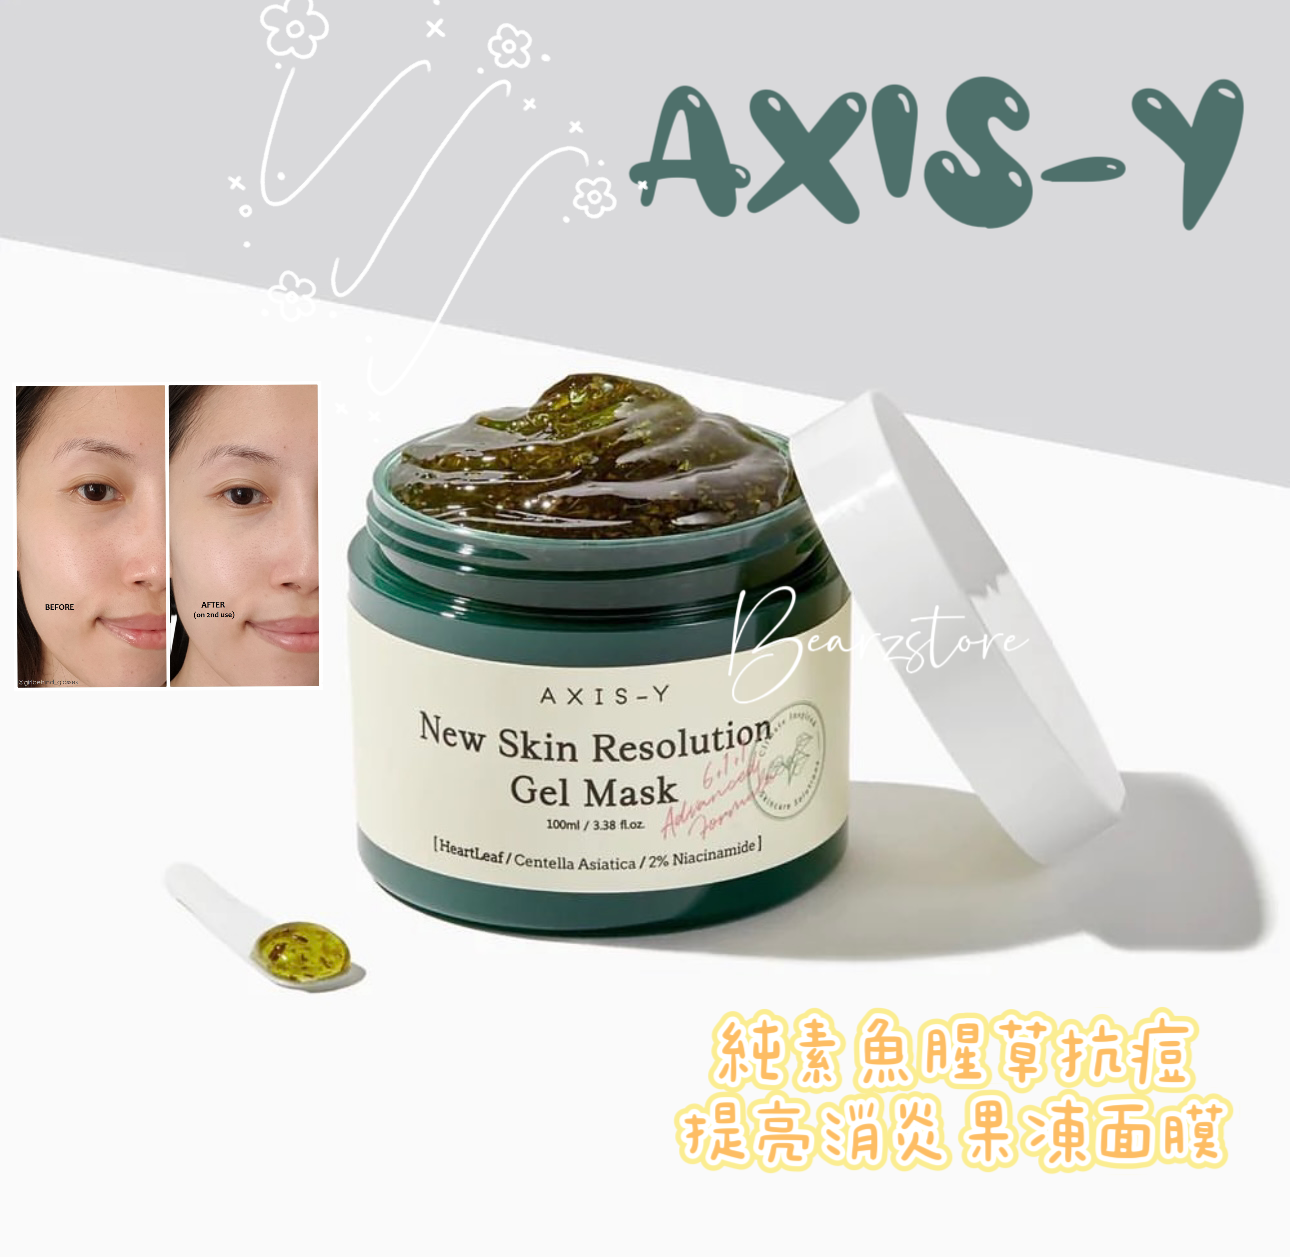 純素護膚品牌🌱 | AXIS-Y 純素魚腥草抗痘提亮消炎果凍面膜💚 為暗瘡肌急救 舒緩鎮靜🧊